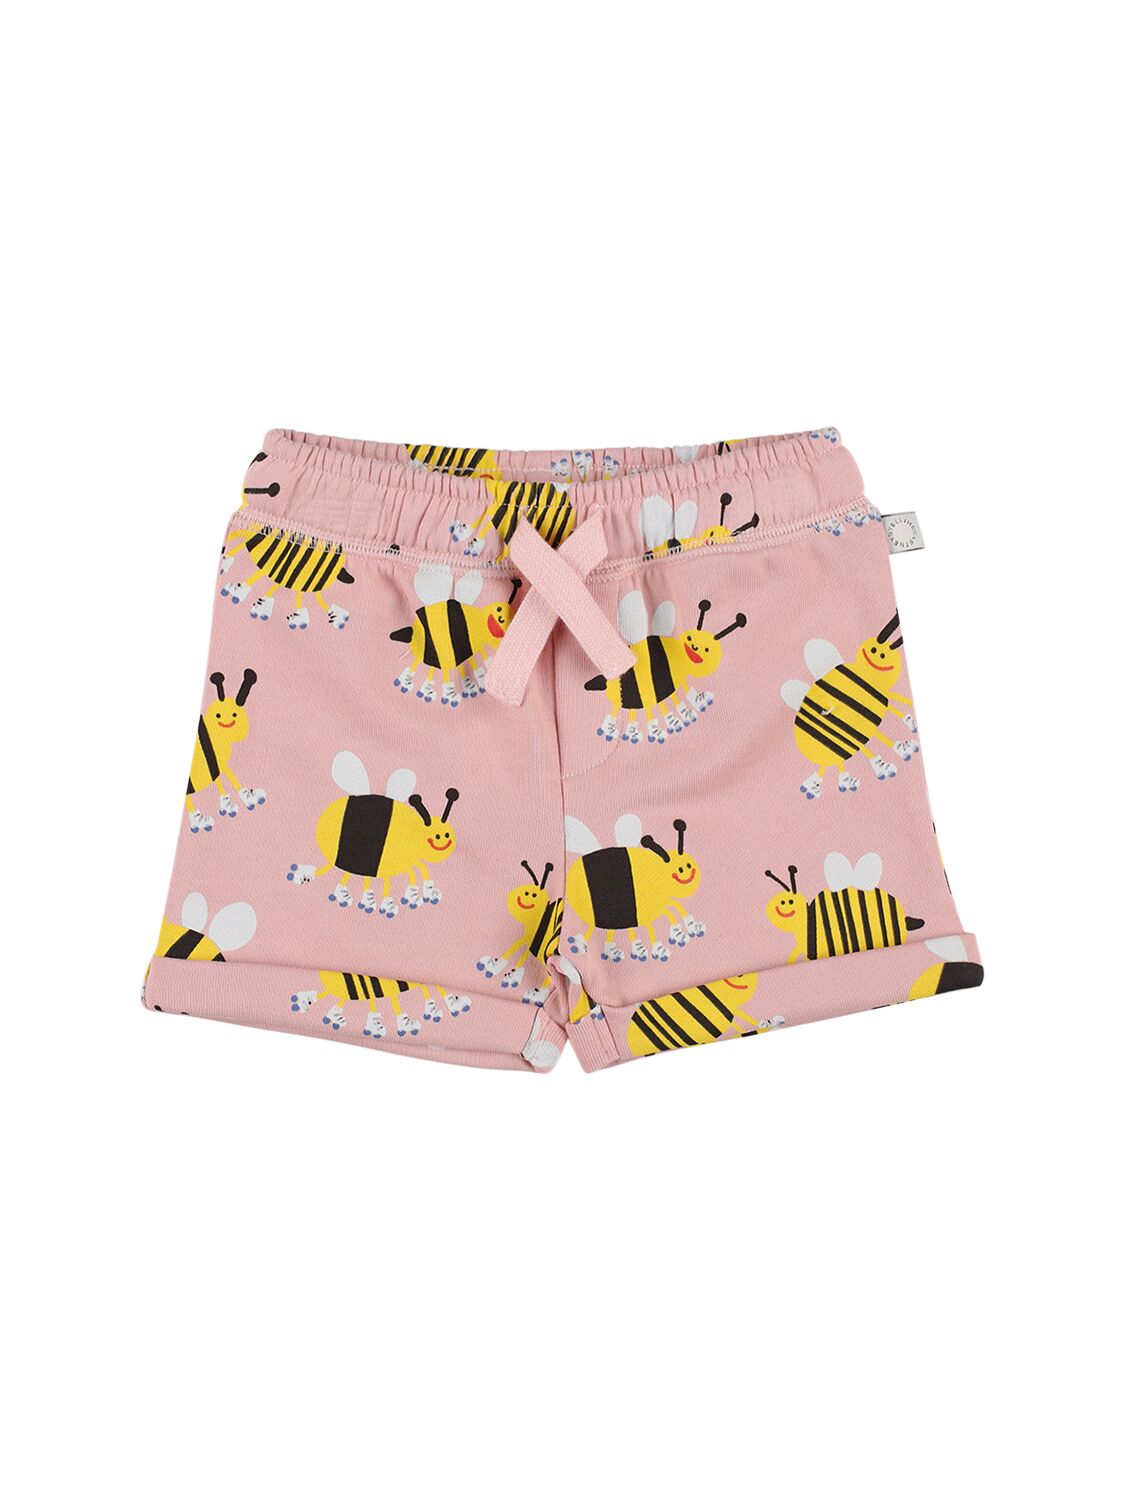 Stella Mccartney Kids' Organic Cotton Jersey Printed Shorts In Pink,multi